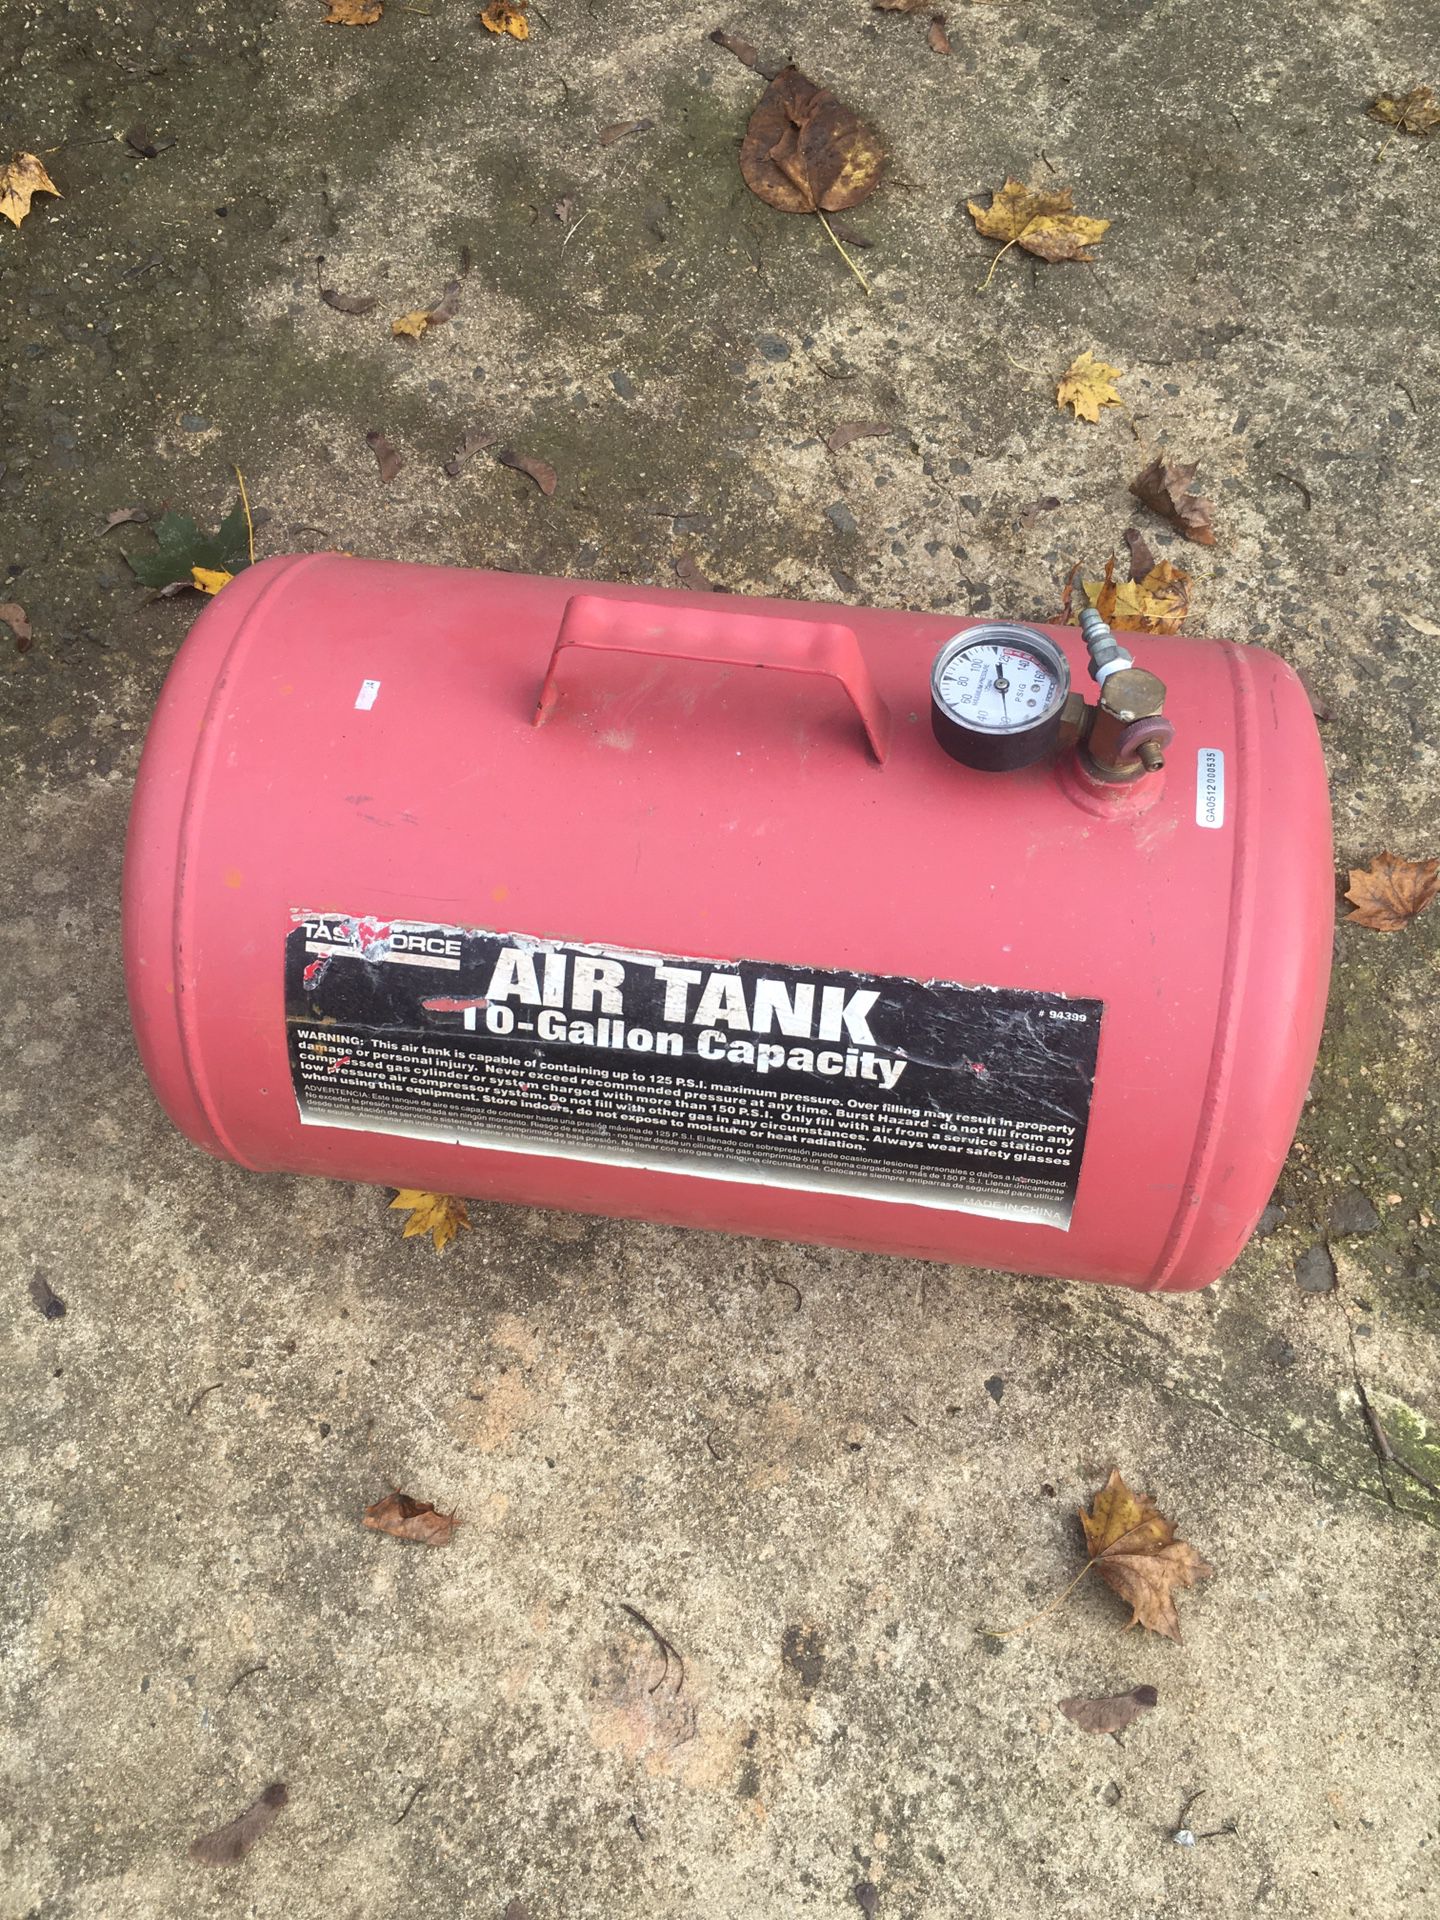 Air Tank 10 gallons of capacity